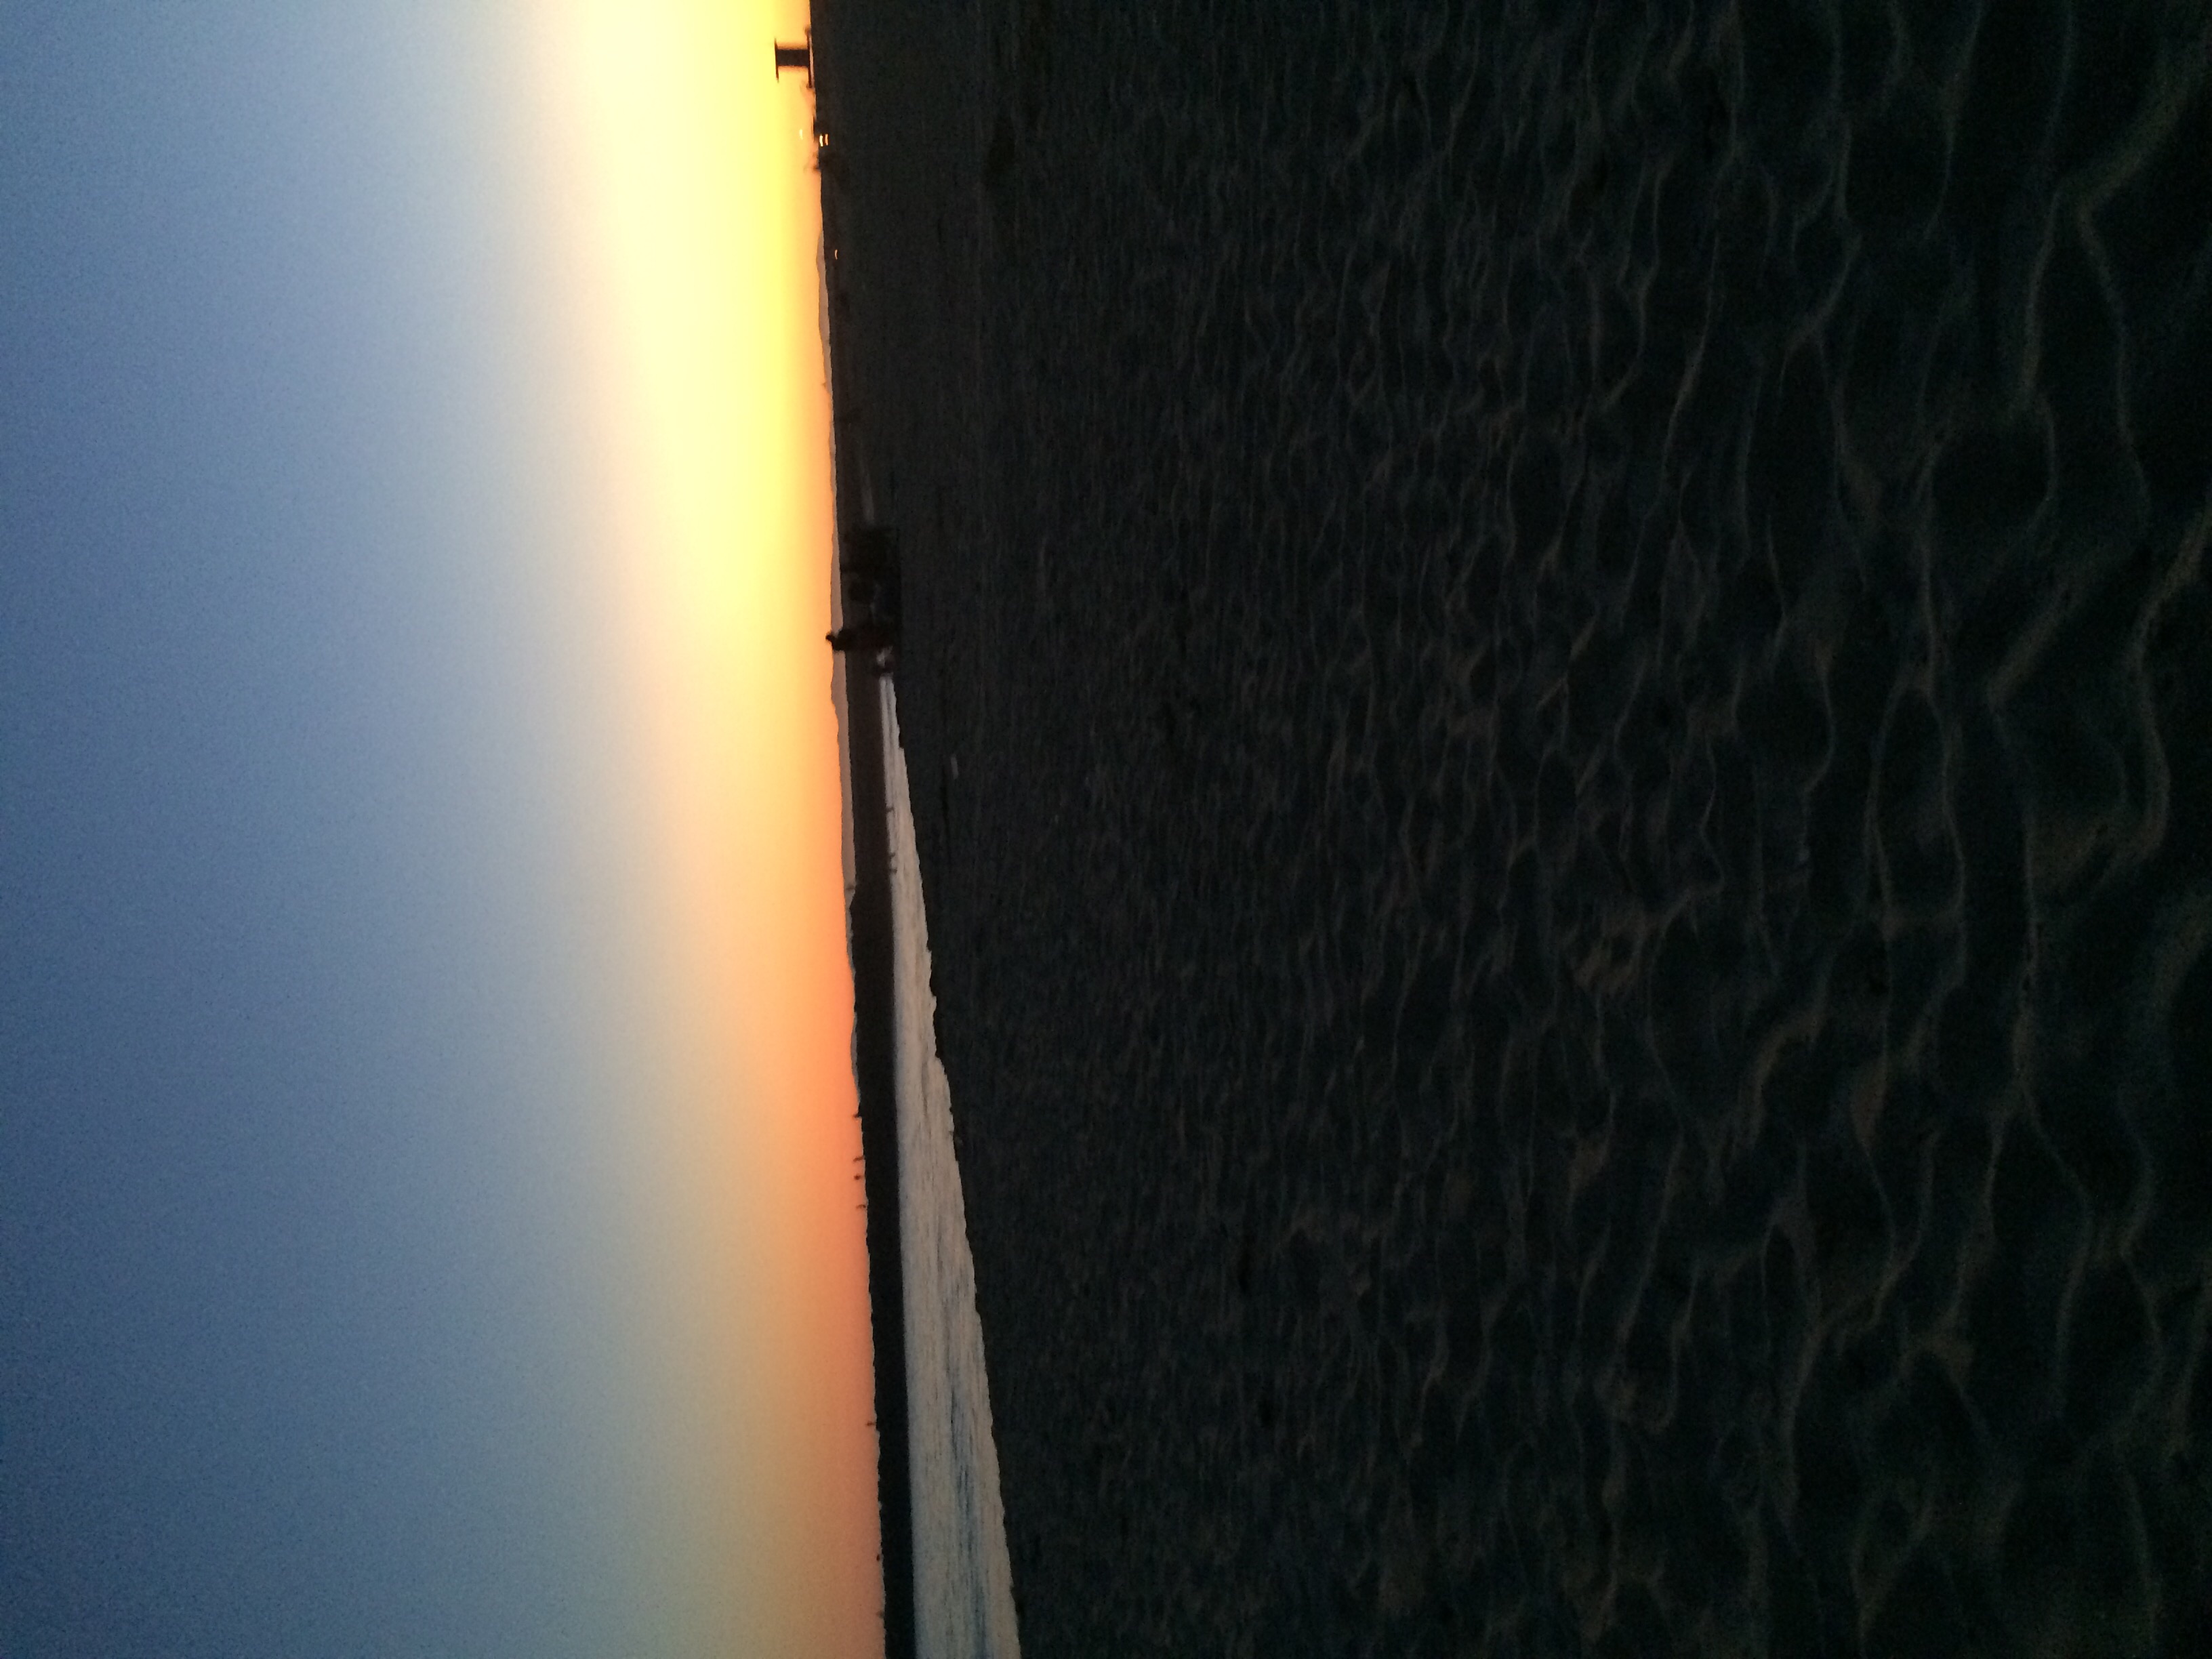  Sunset 海滩